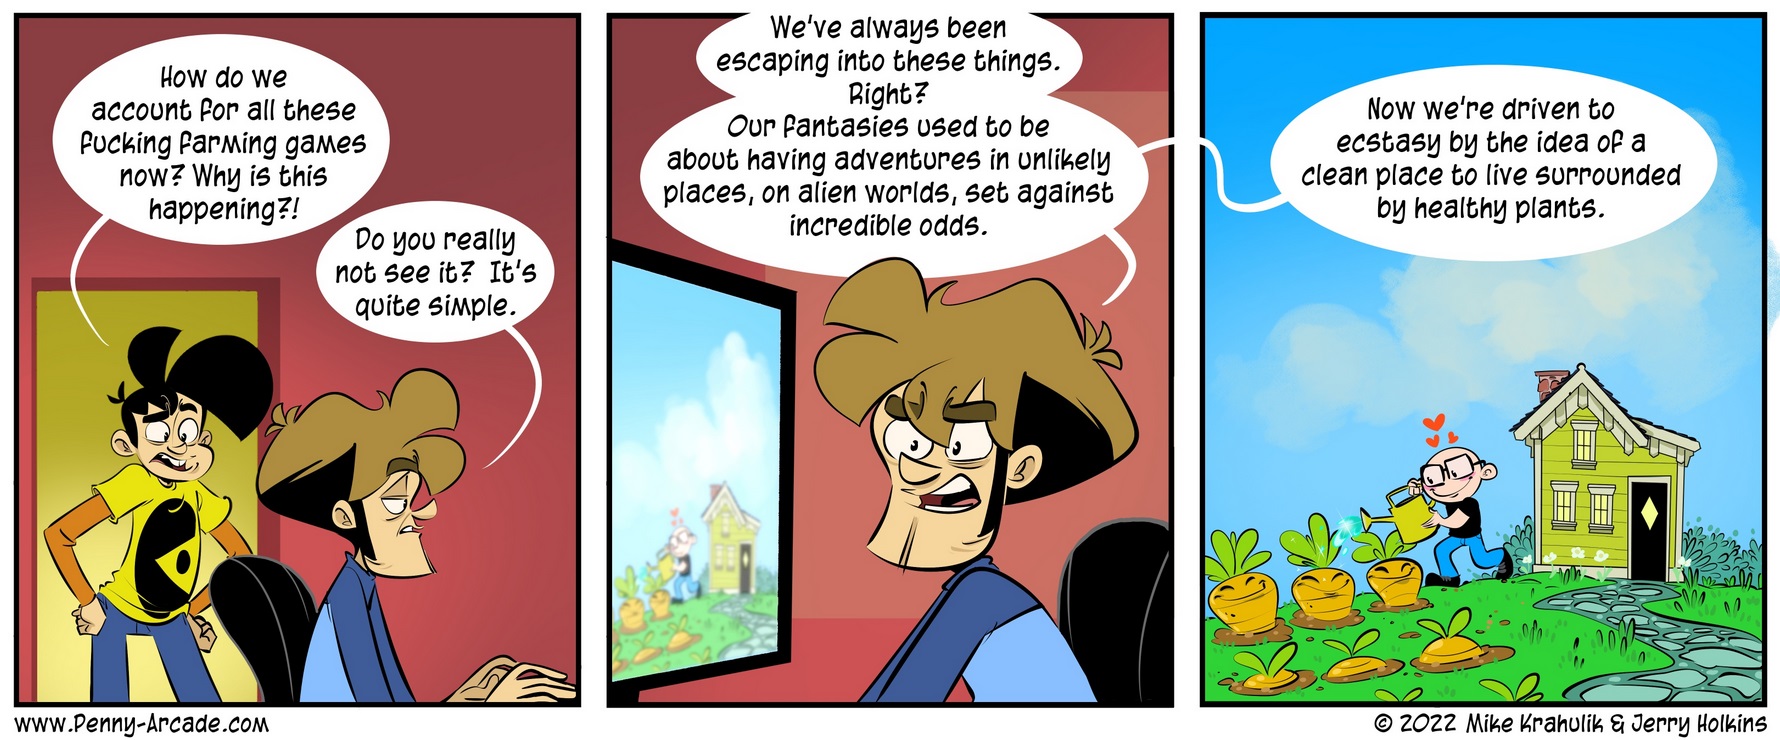 Ein Comic von Penny Arcade über die Vielzahl von Farming Games während der letzten Nintendo Direct